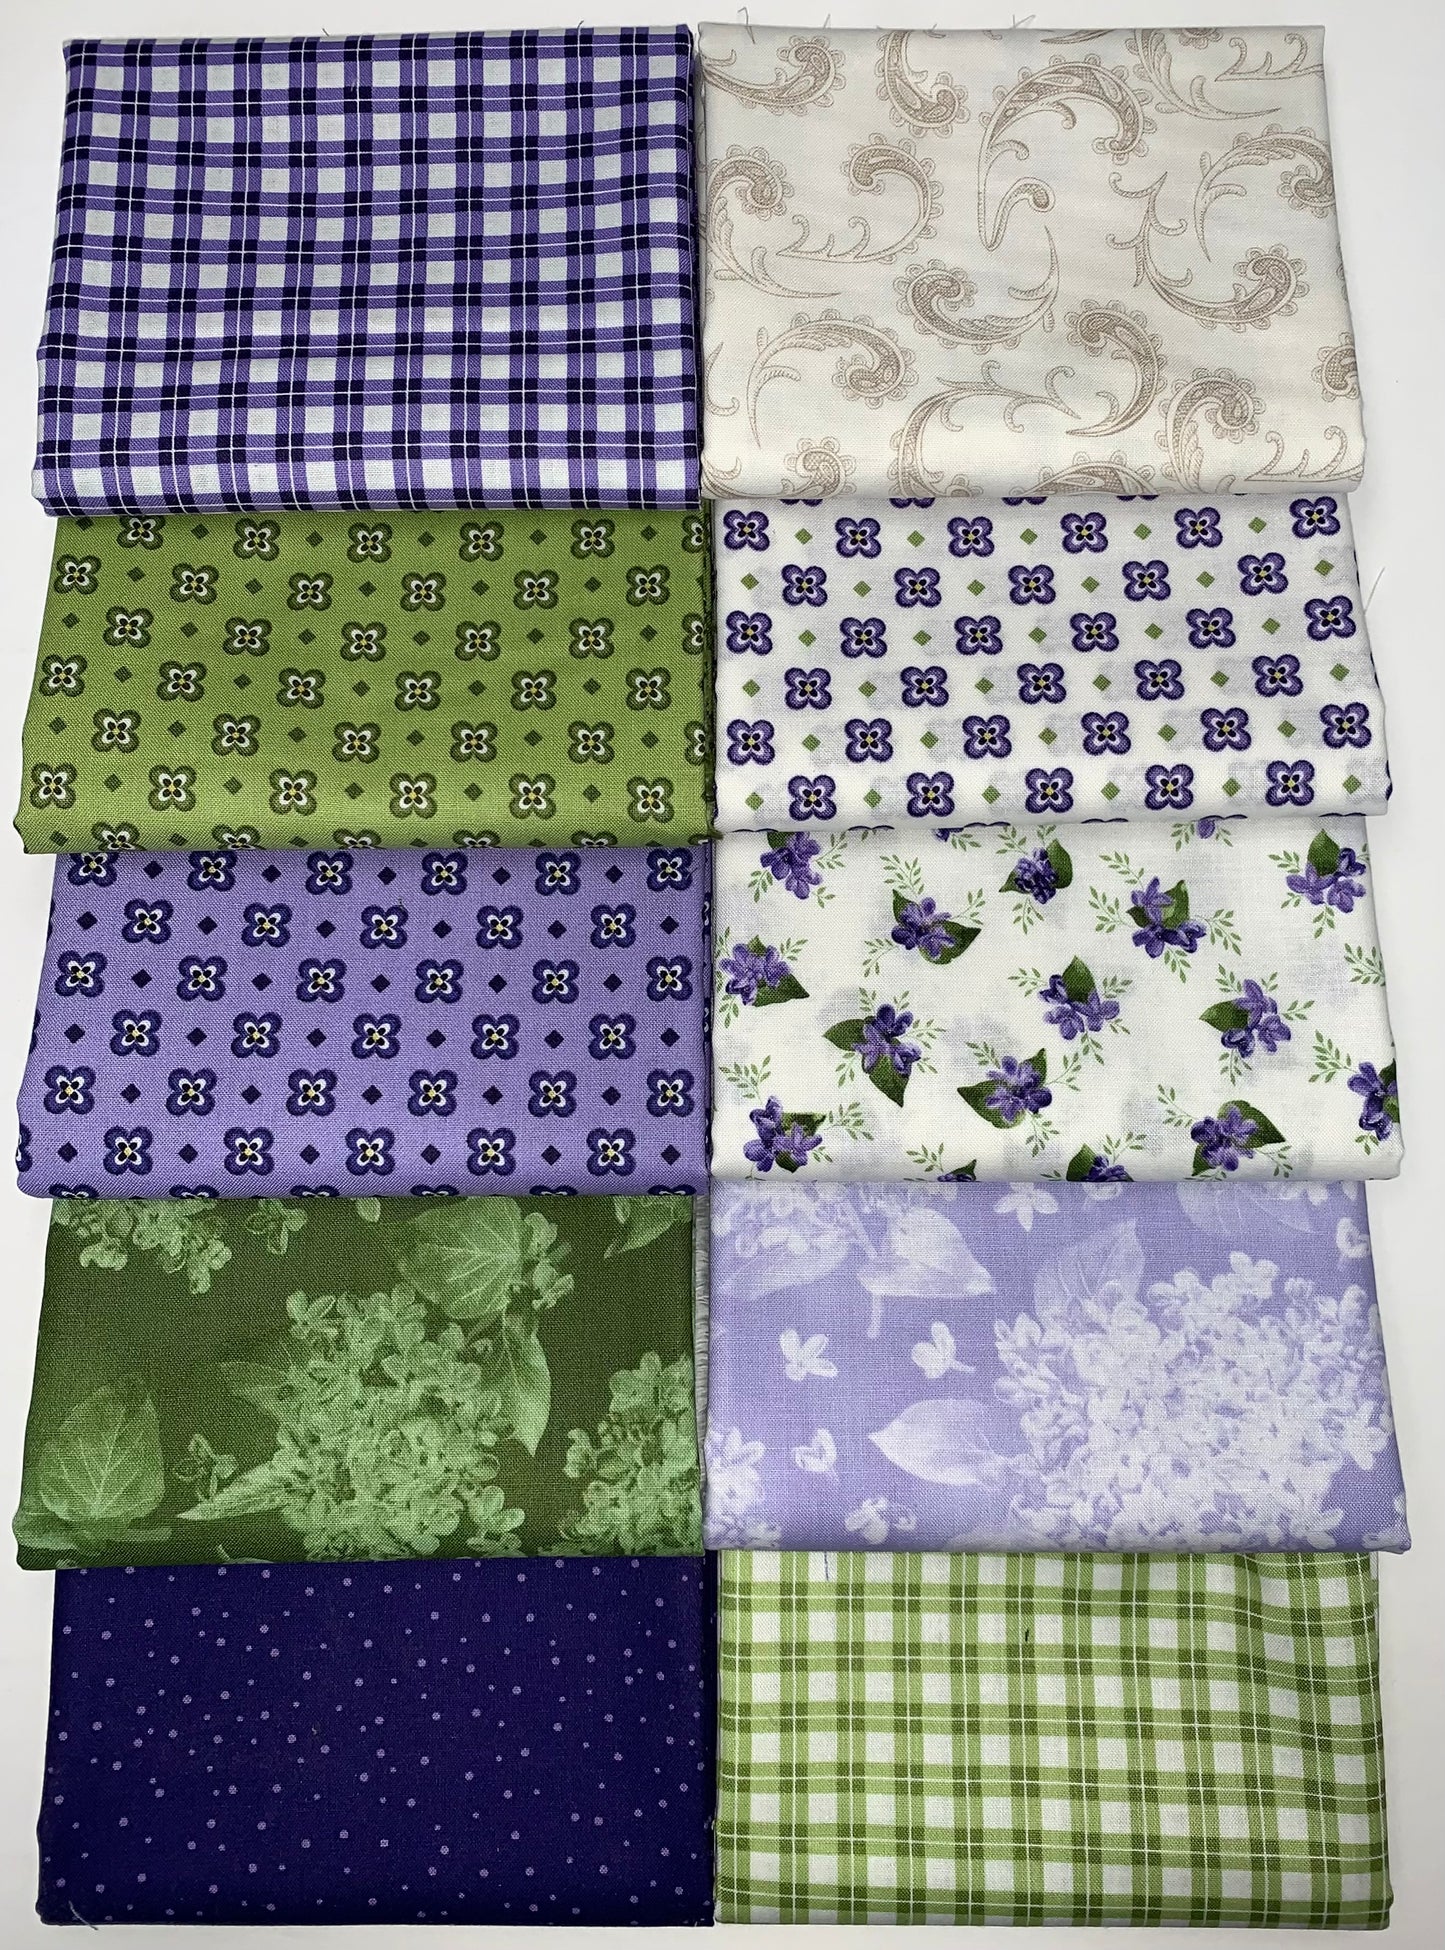 Robert Kaufman Flowerhouse: "Elizabeth" Half-Yard Bundle - 10 Fabrics, 5 Total Yards